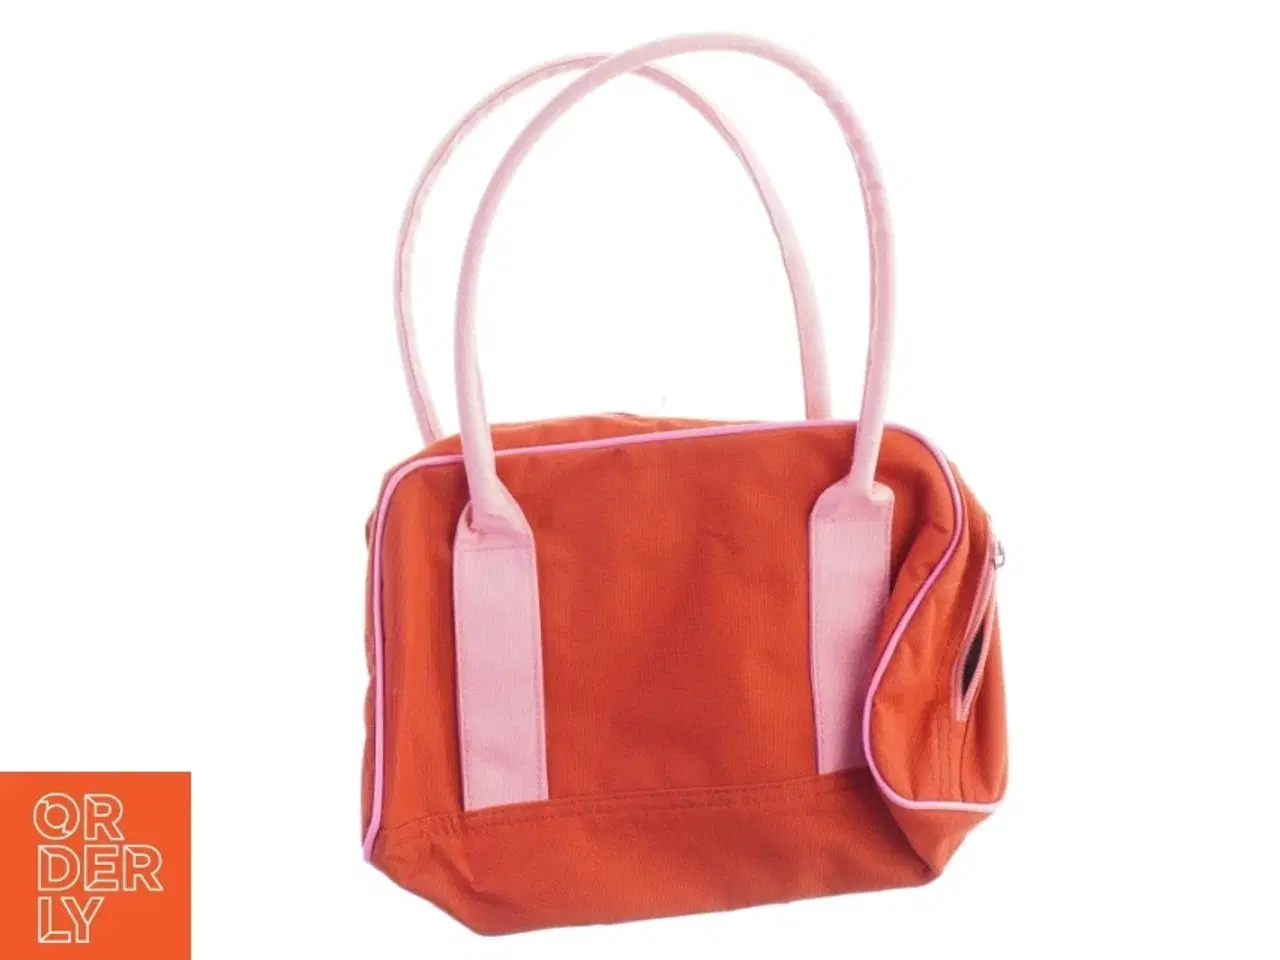 Billede 3 - Dameshåndtaske i orange og pink (str. 29 x 20 x 9 cm)